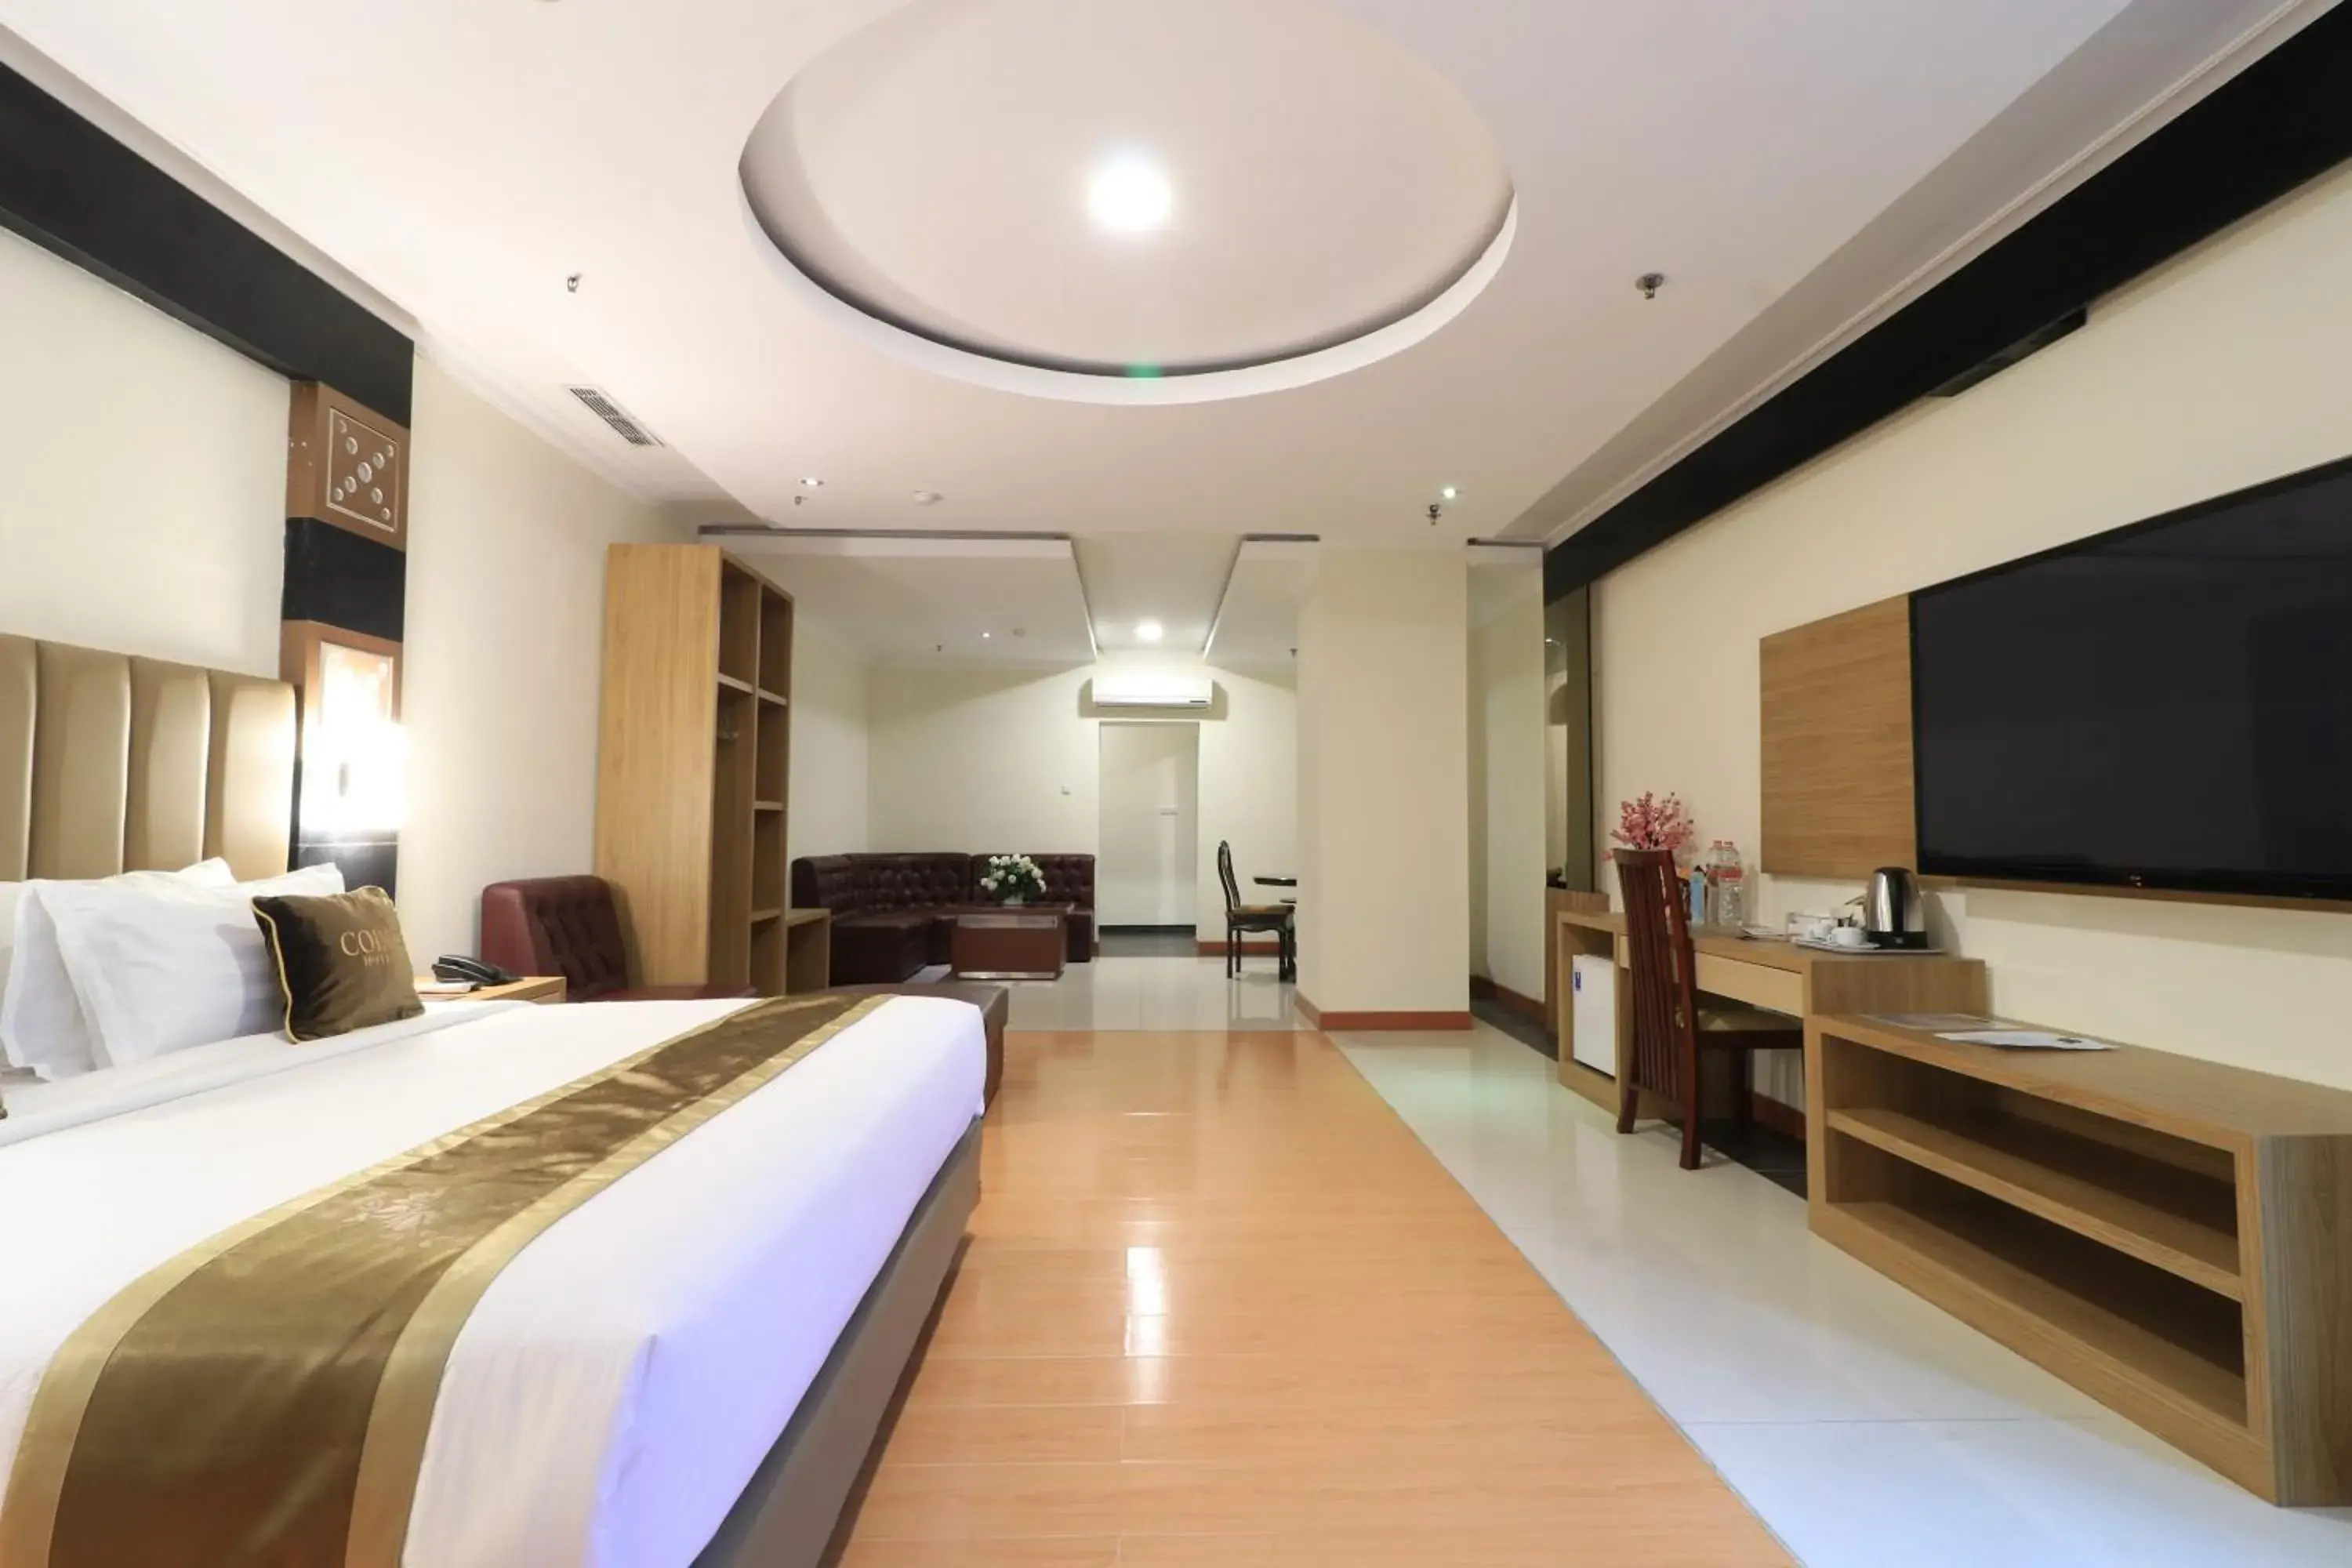 Bedroom in Coins Hotel Jakarta